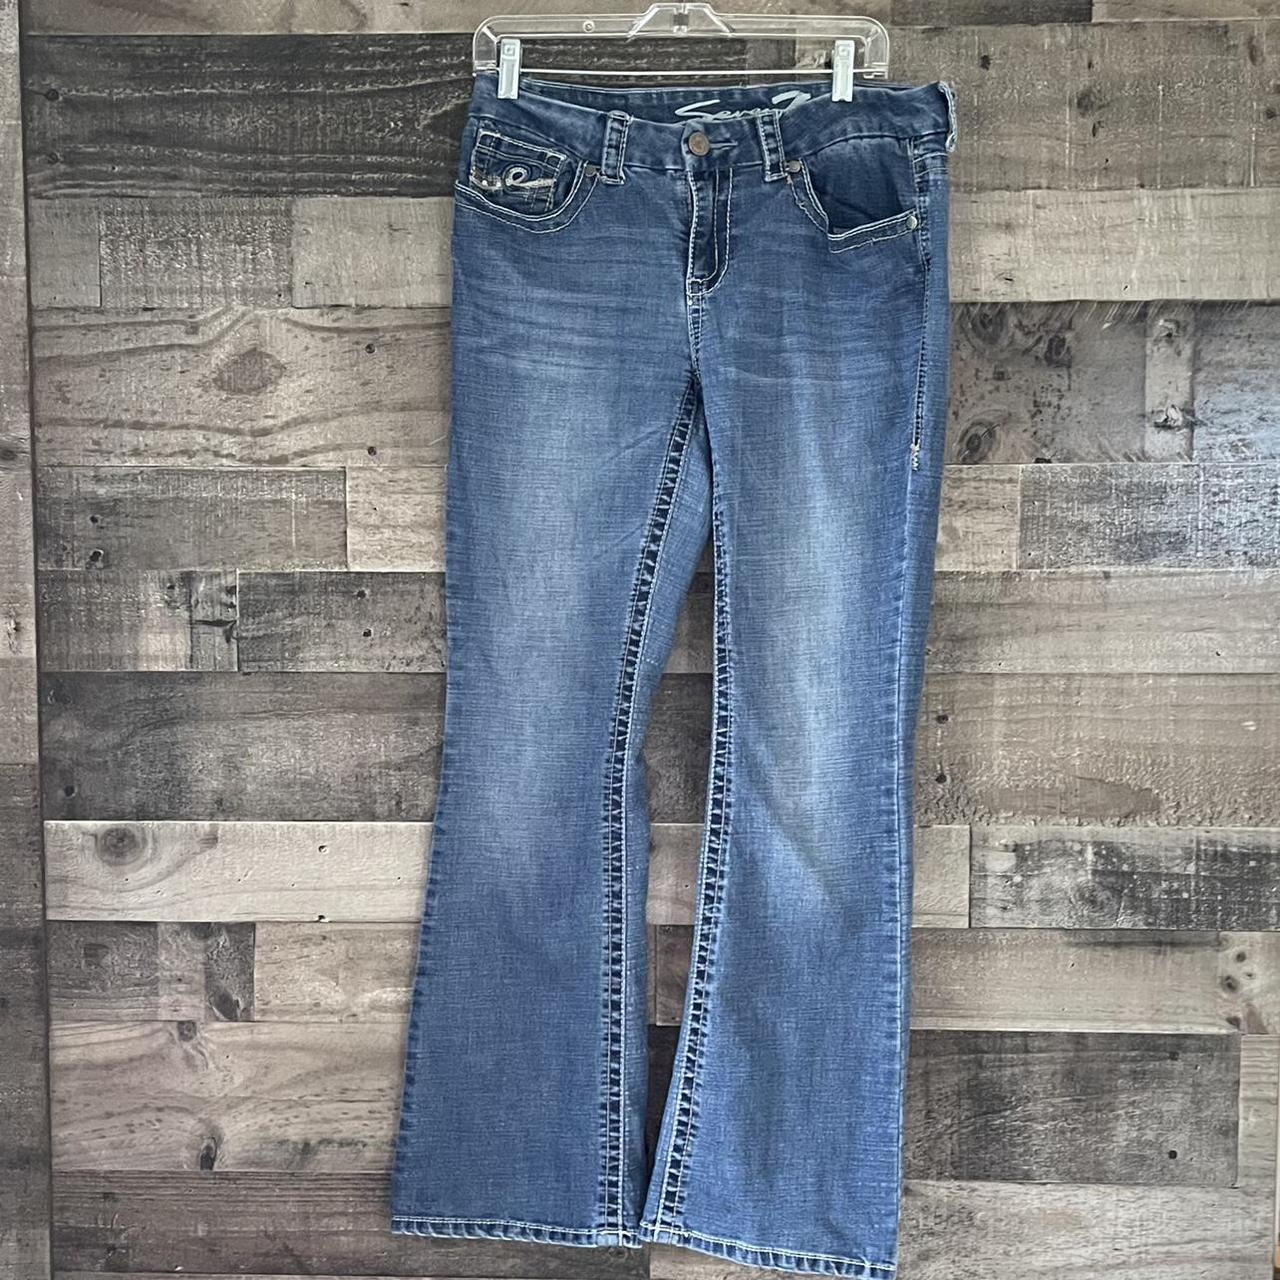 Women’s bootcut jeans by Seven7 Size 10 70%... - Depop